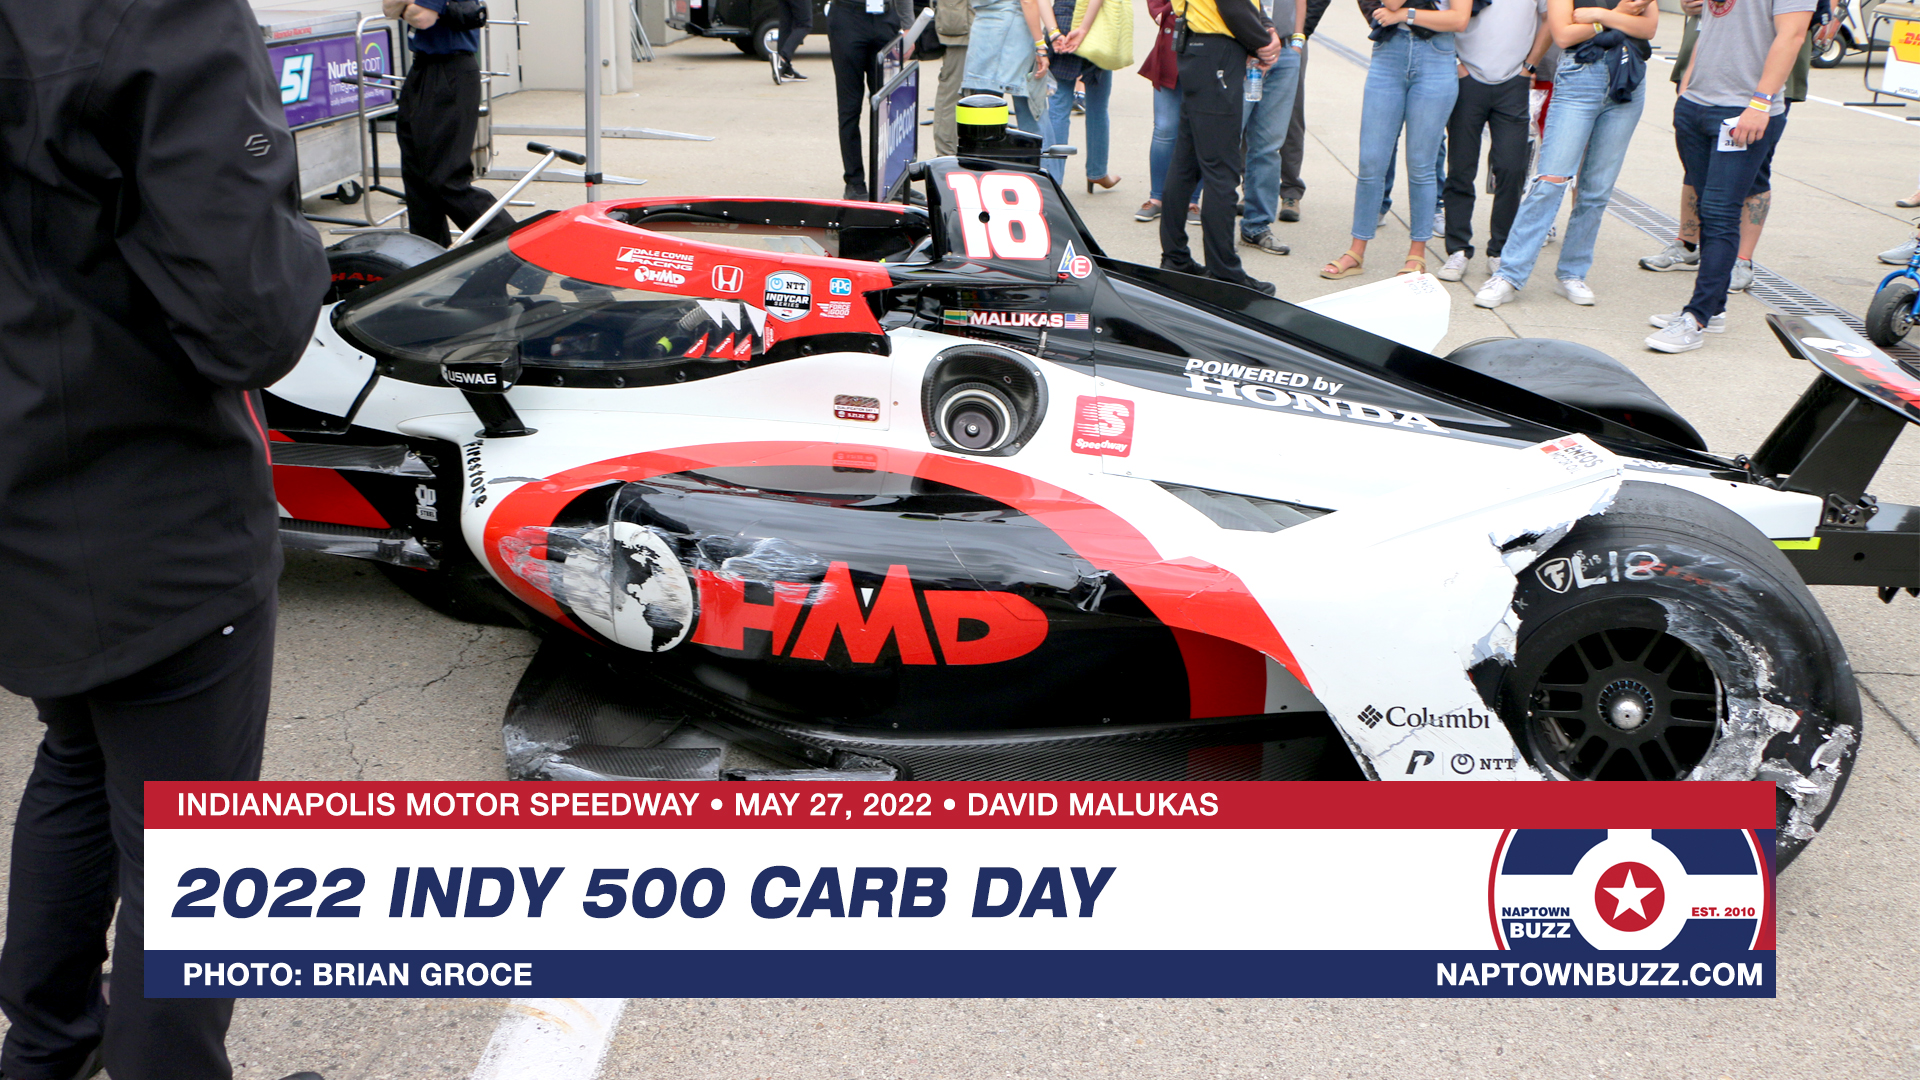 Indy 500 Carb Day May 27, 2022 David Malukas Car Crash